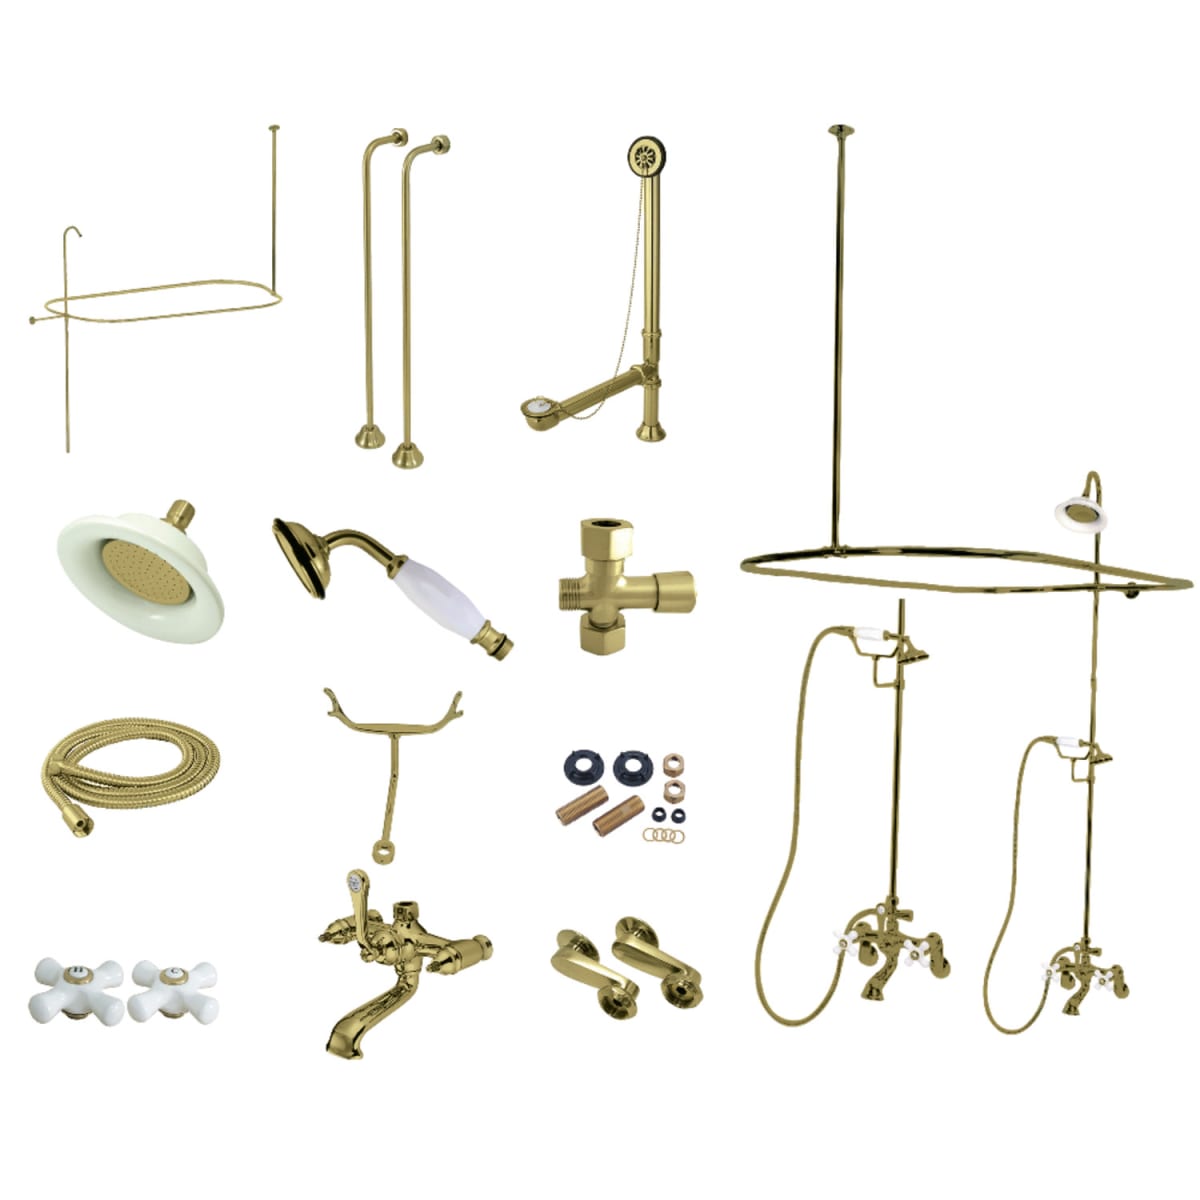 Kingston Brass CCK1147PX Vintage Shower System with Shower | Build.com